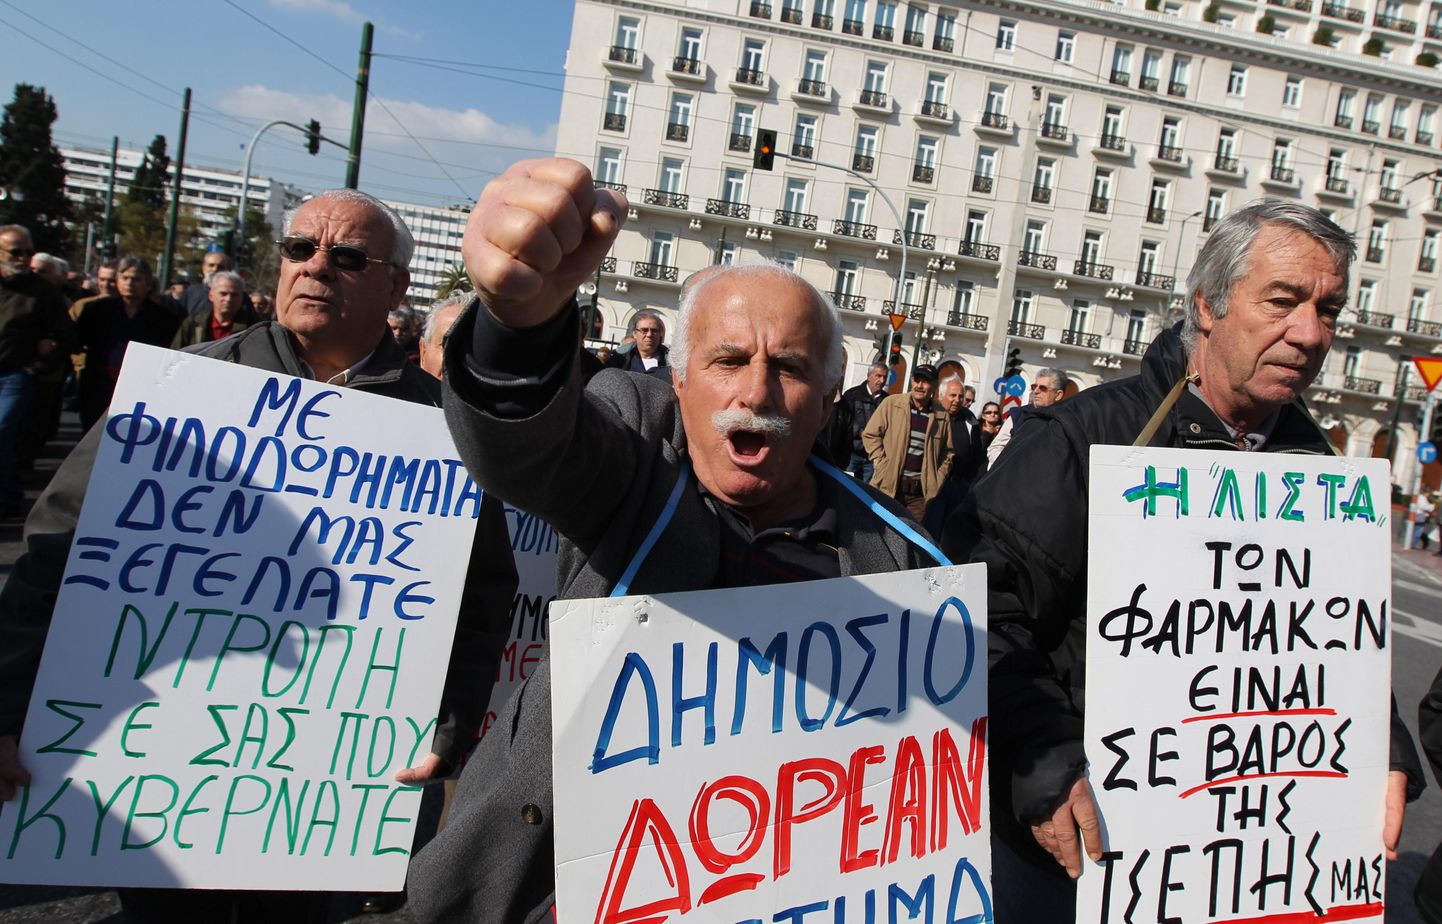 Kreeka hiljutised kulukärped on kopsu üle maksa ajanud ka pensionäridel, kes parlamendihoone juures protestisid.